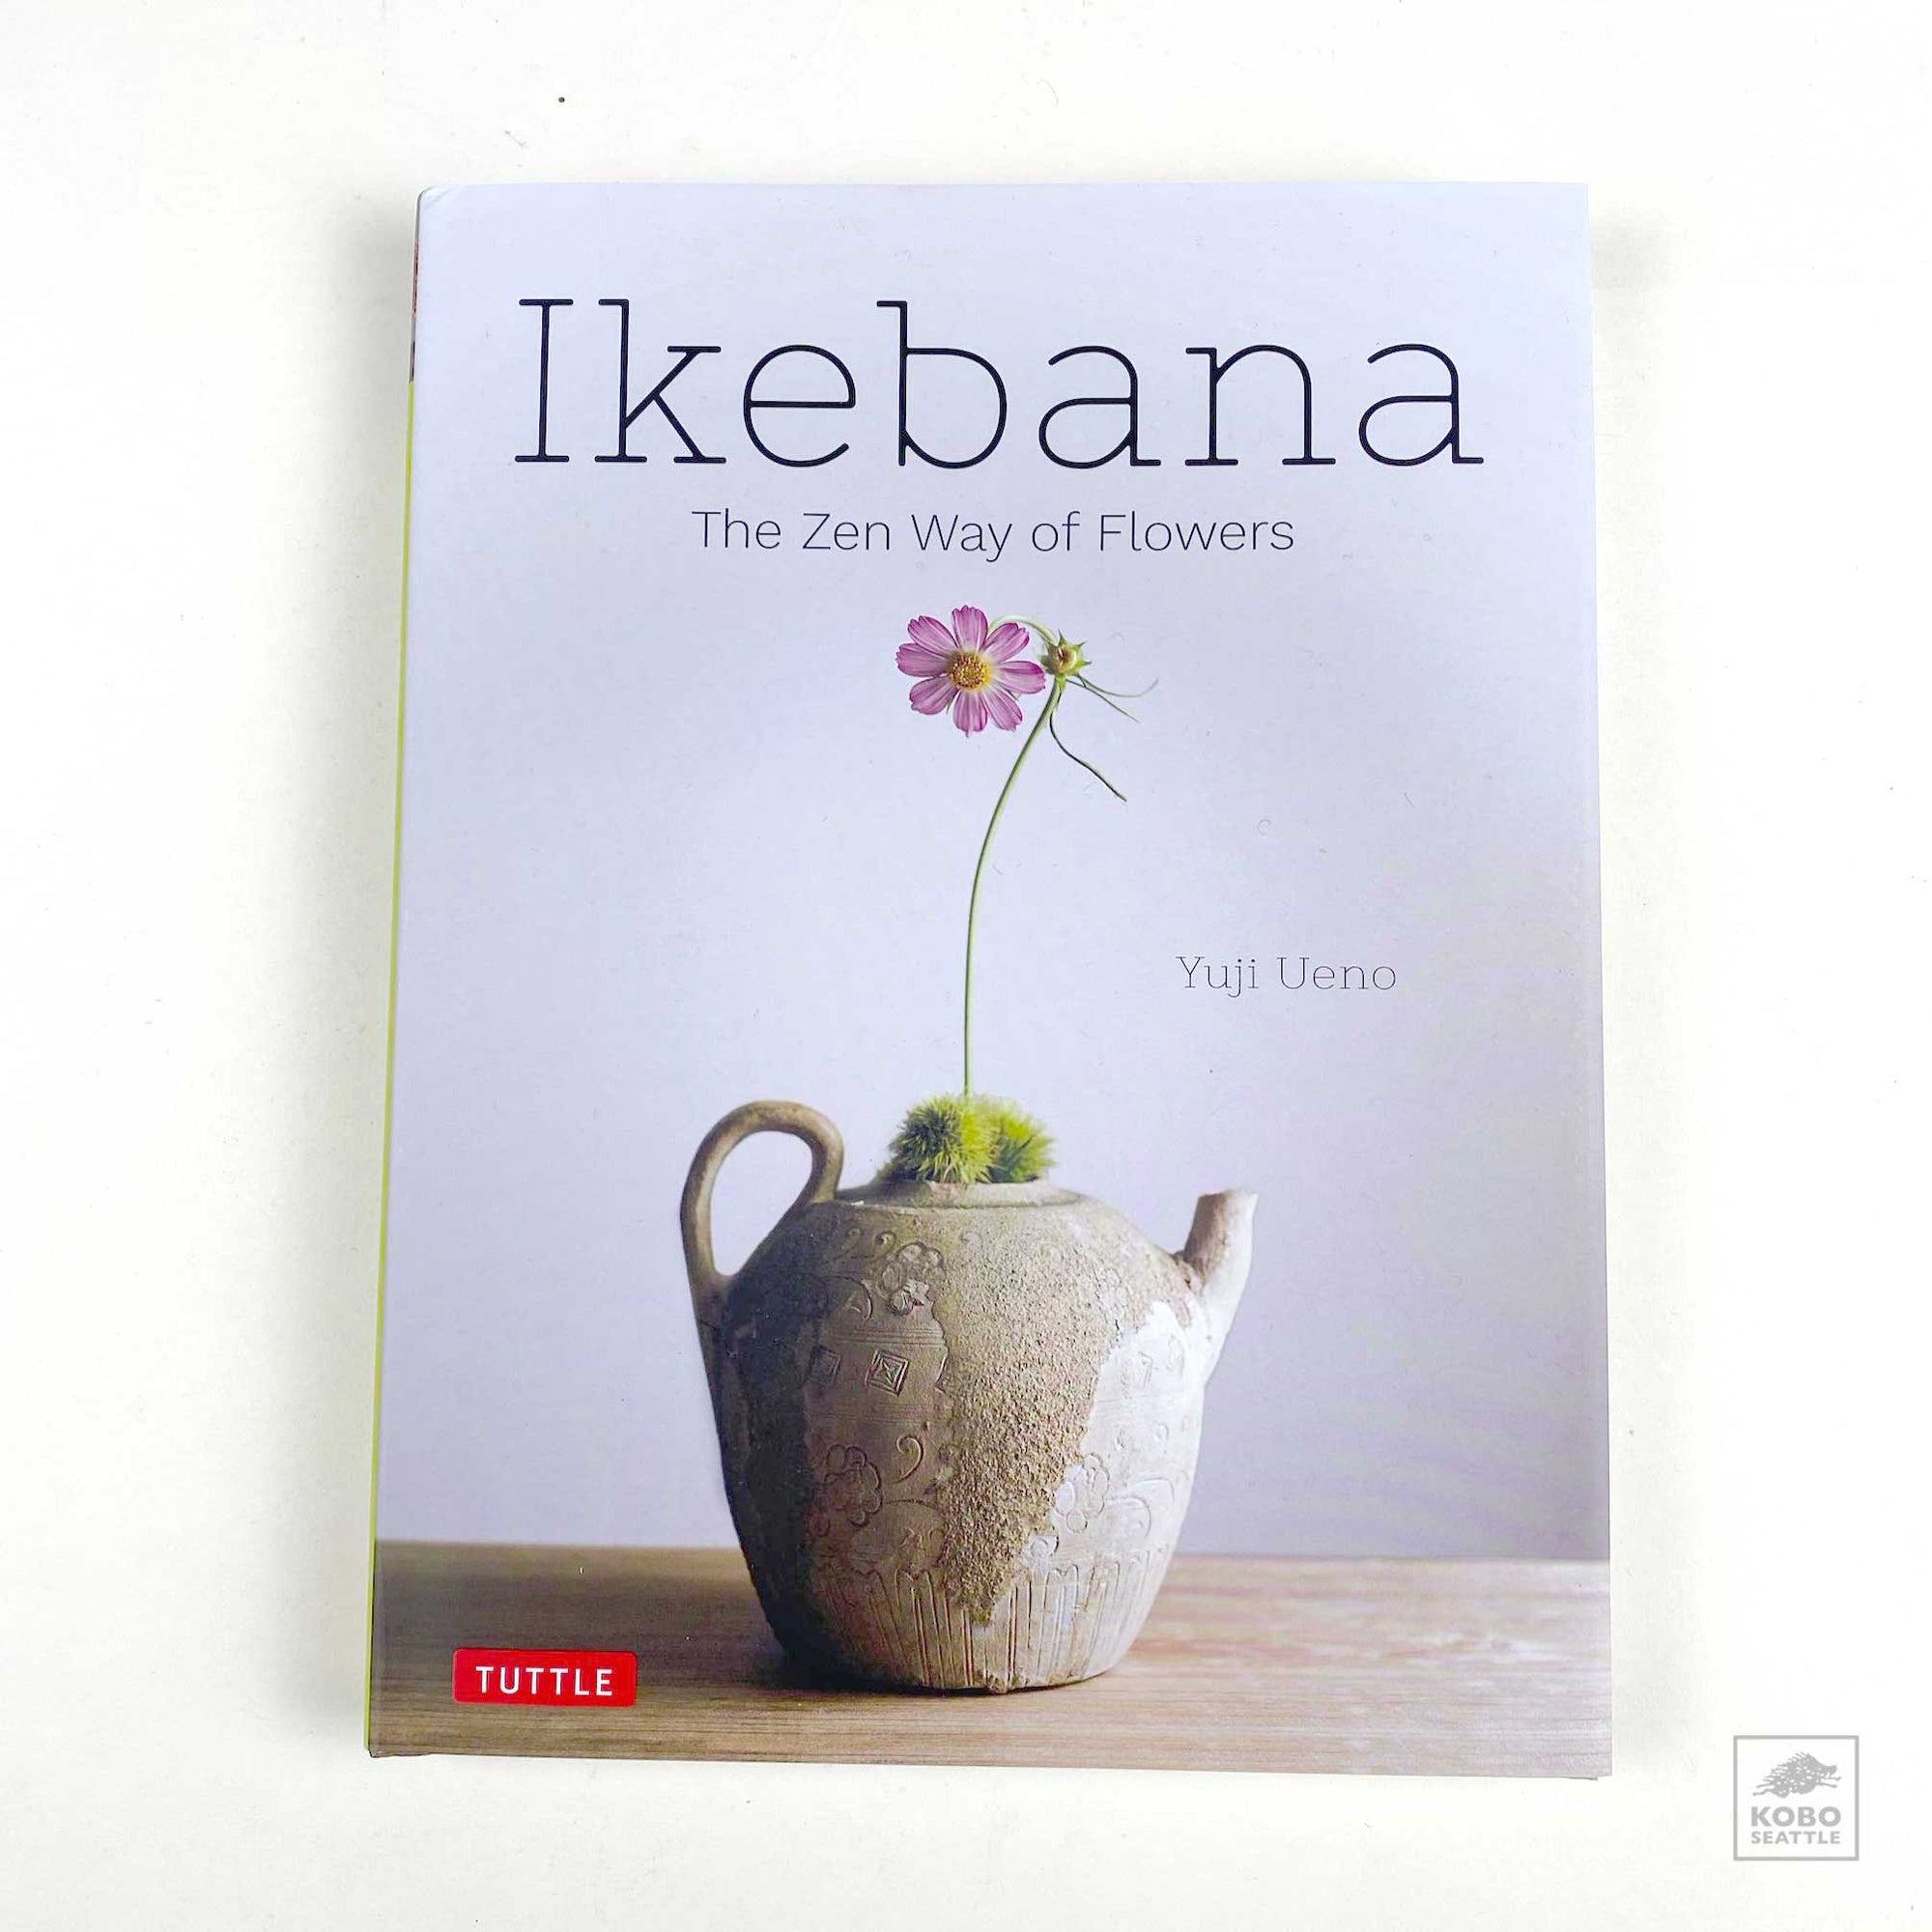 Book: Ikebana - The Zen Way of Flowers